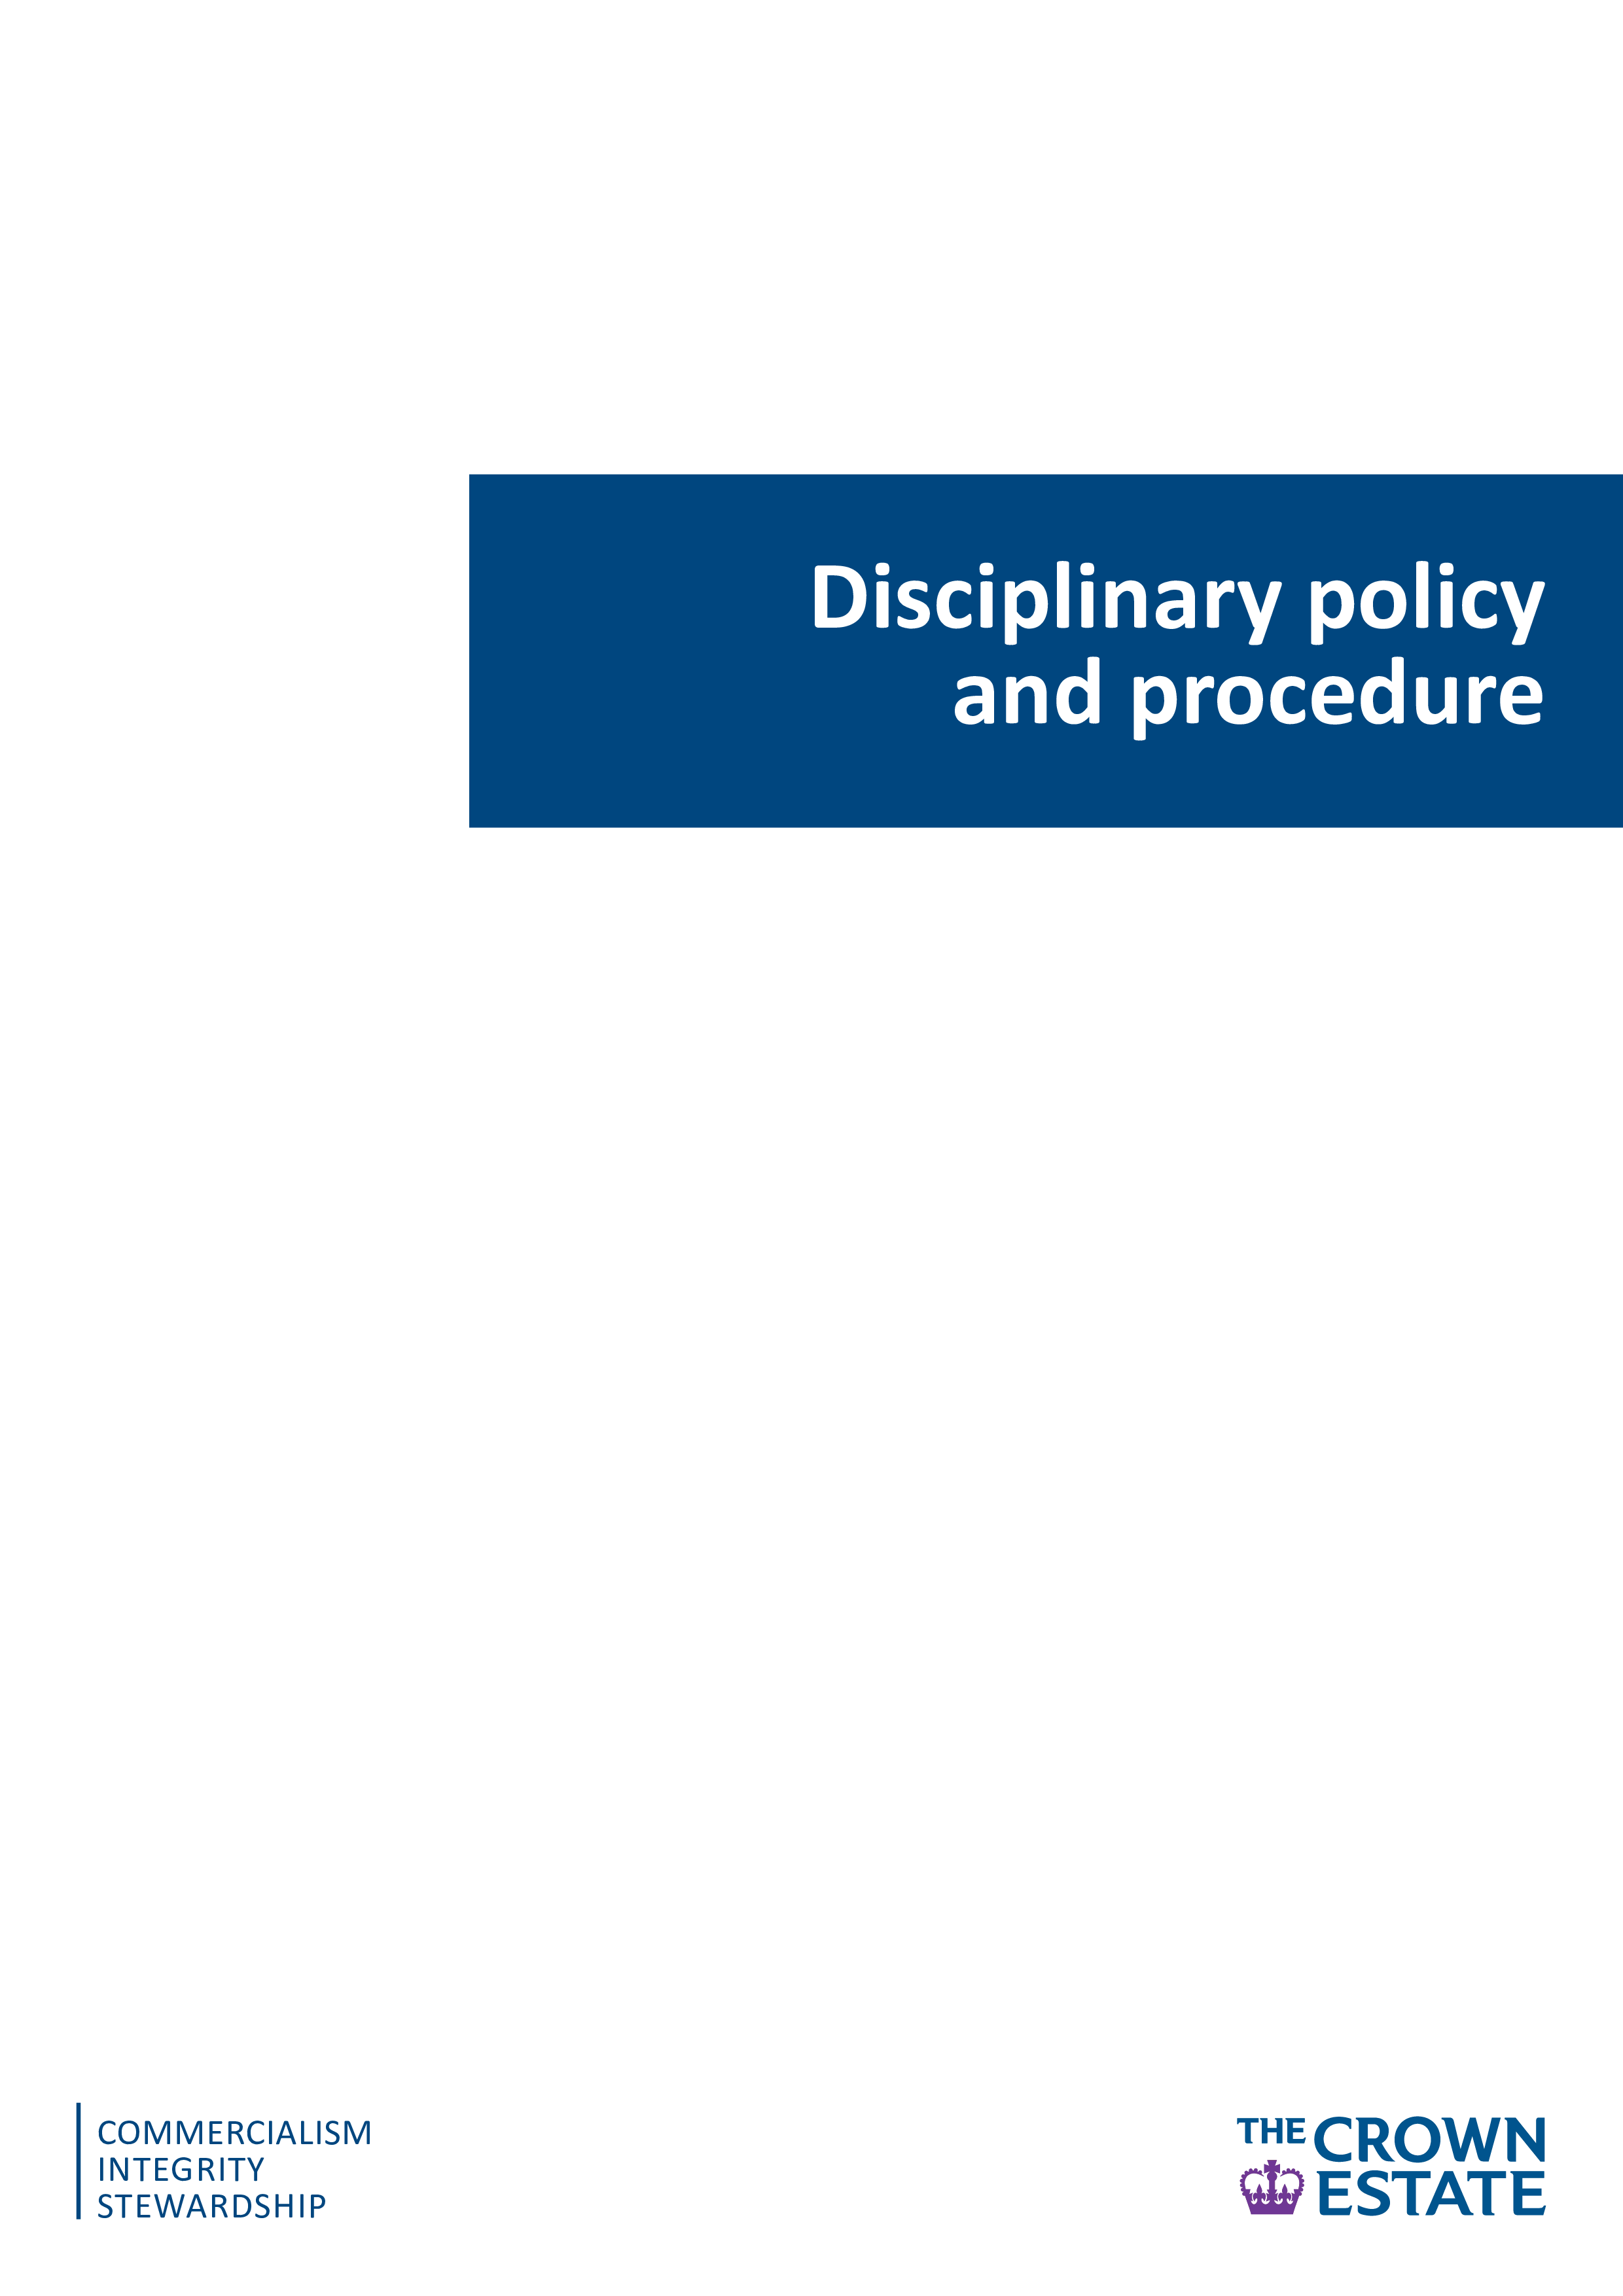 disciplinary policy and procedure plantilla imagen principal